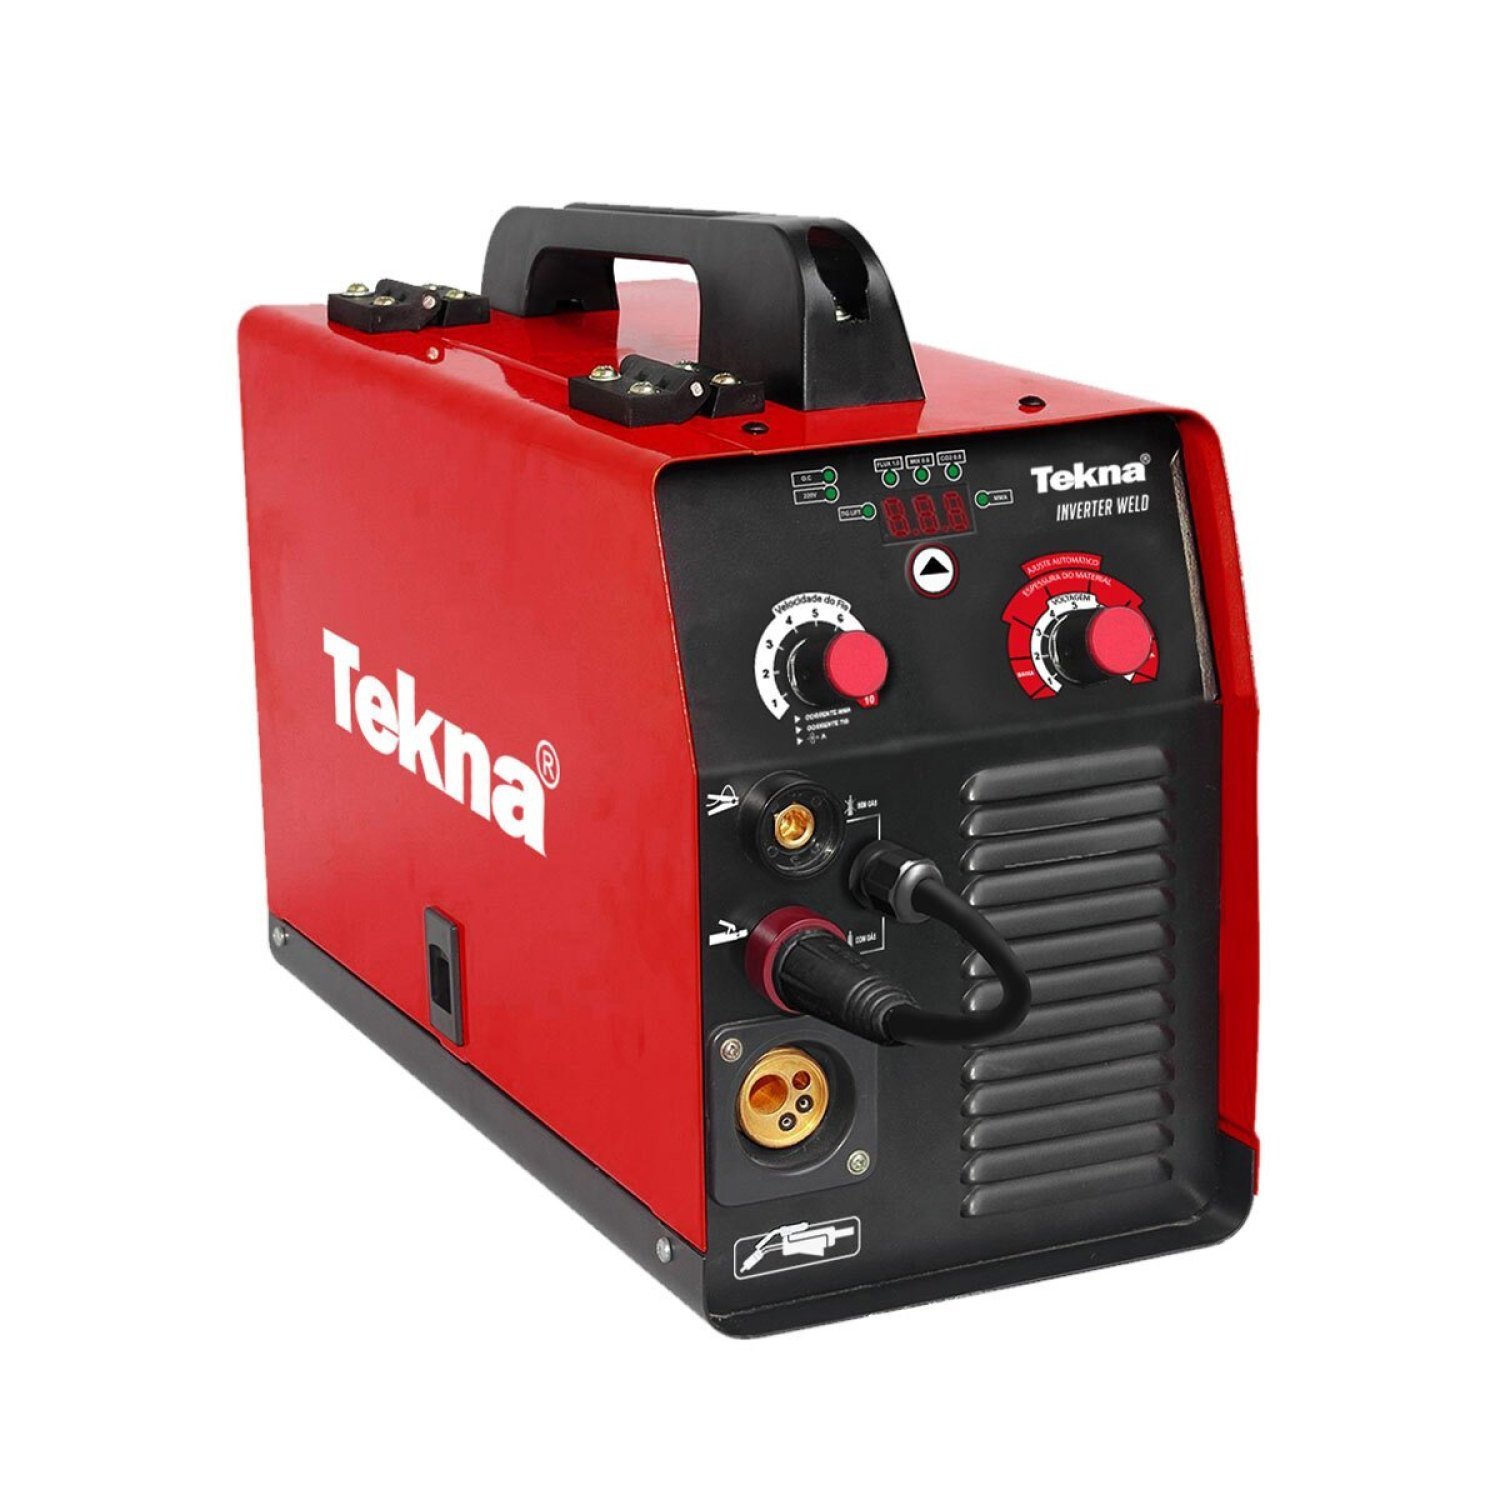 Maquina de Solda Tekna Inverter Weld Mig/mma/tiglift 160a 220v 60hz com Painel Digital - 1